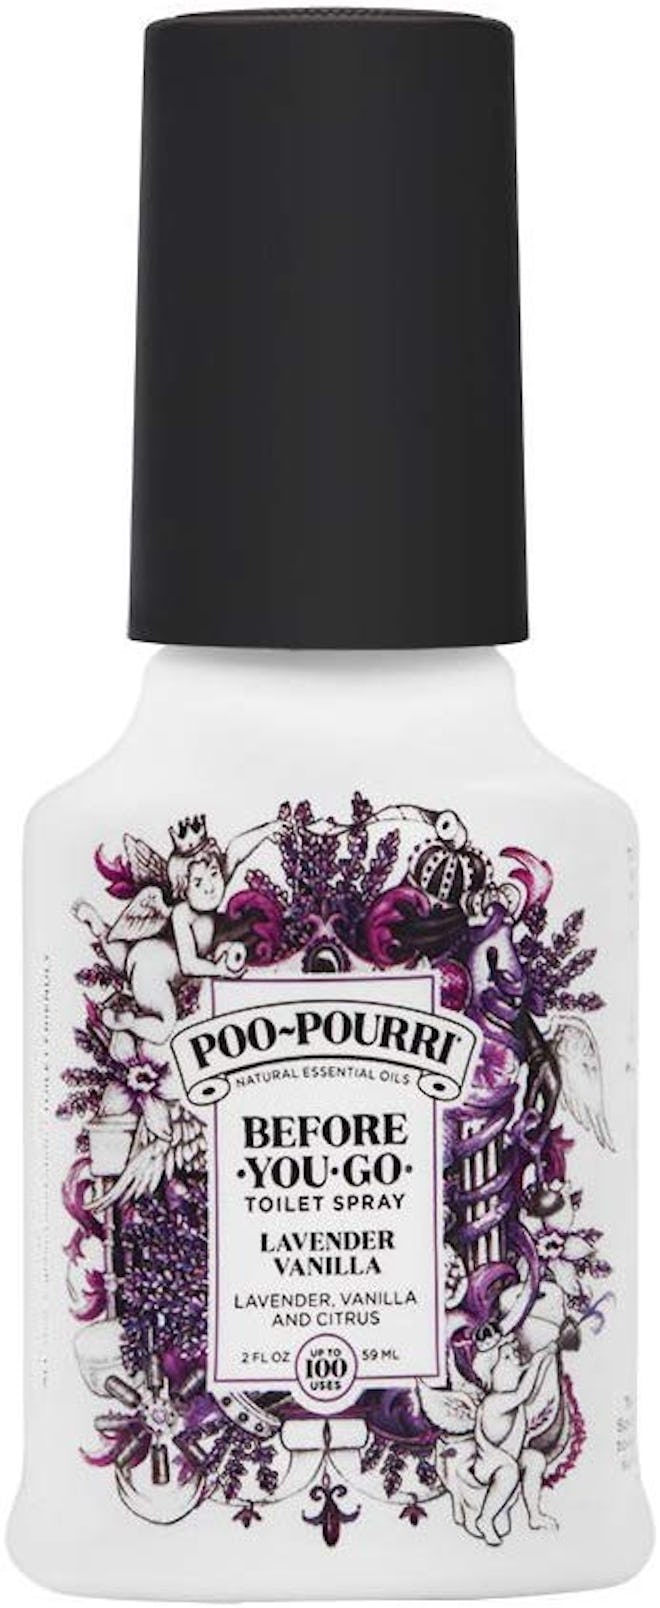 Poo-Pourri Lavender Vanilla Before-You-Go Toilet Spray